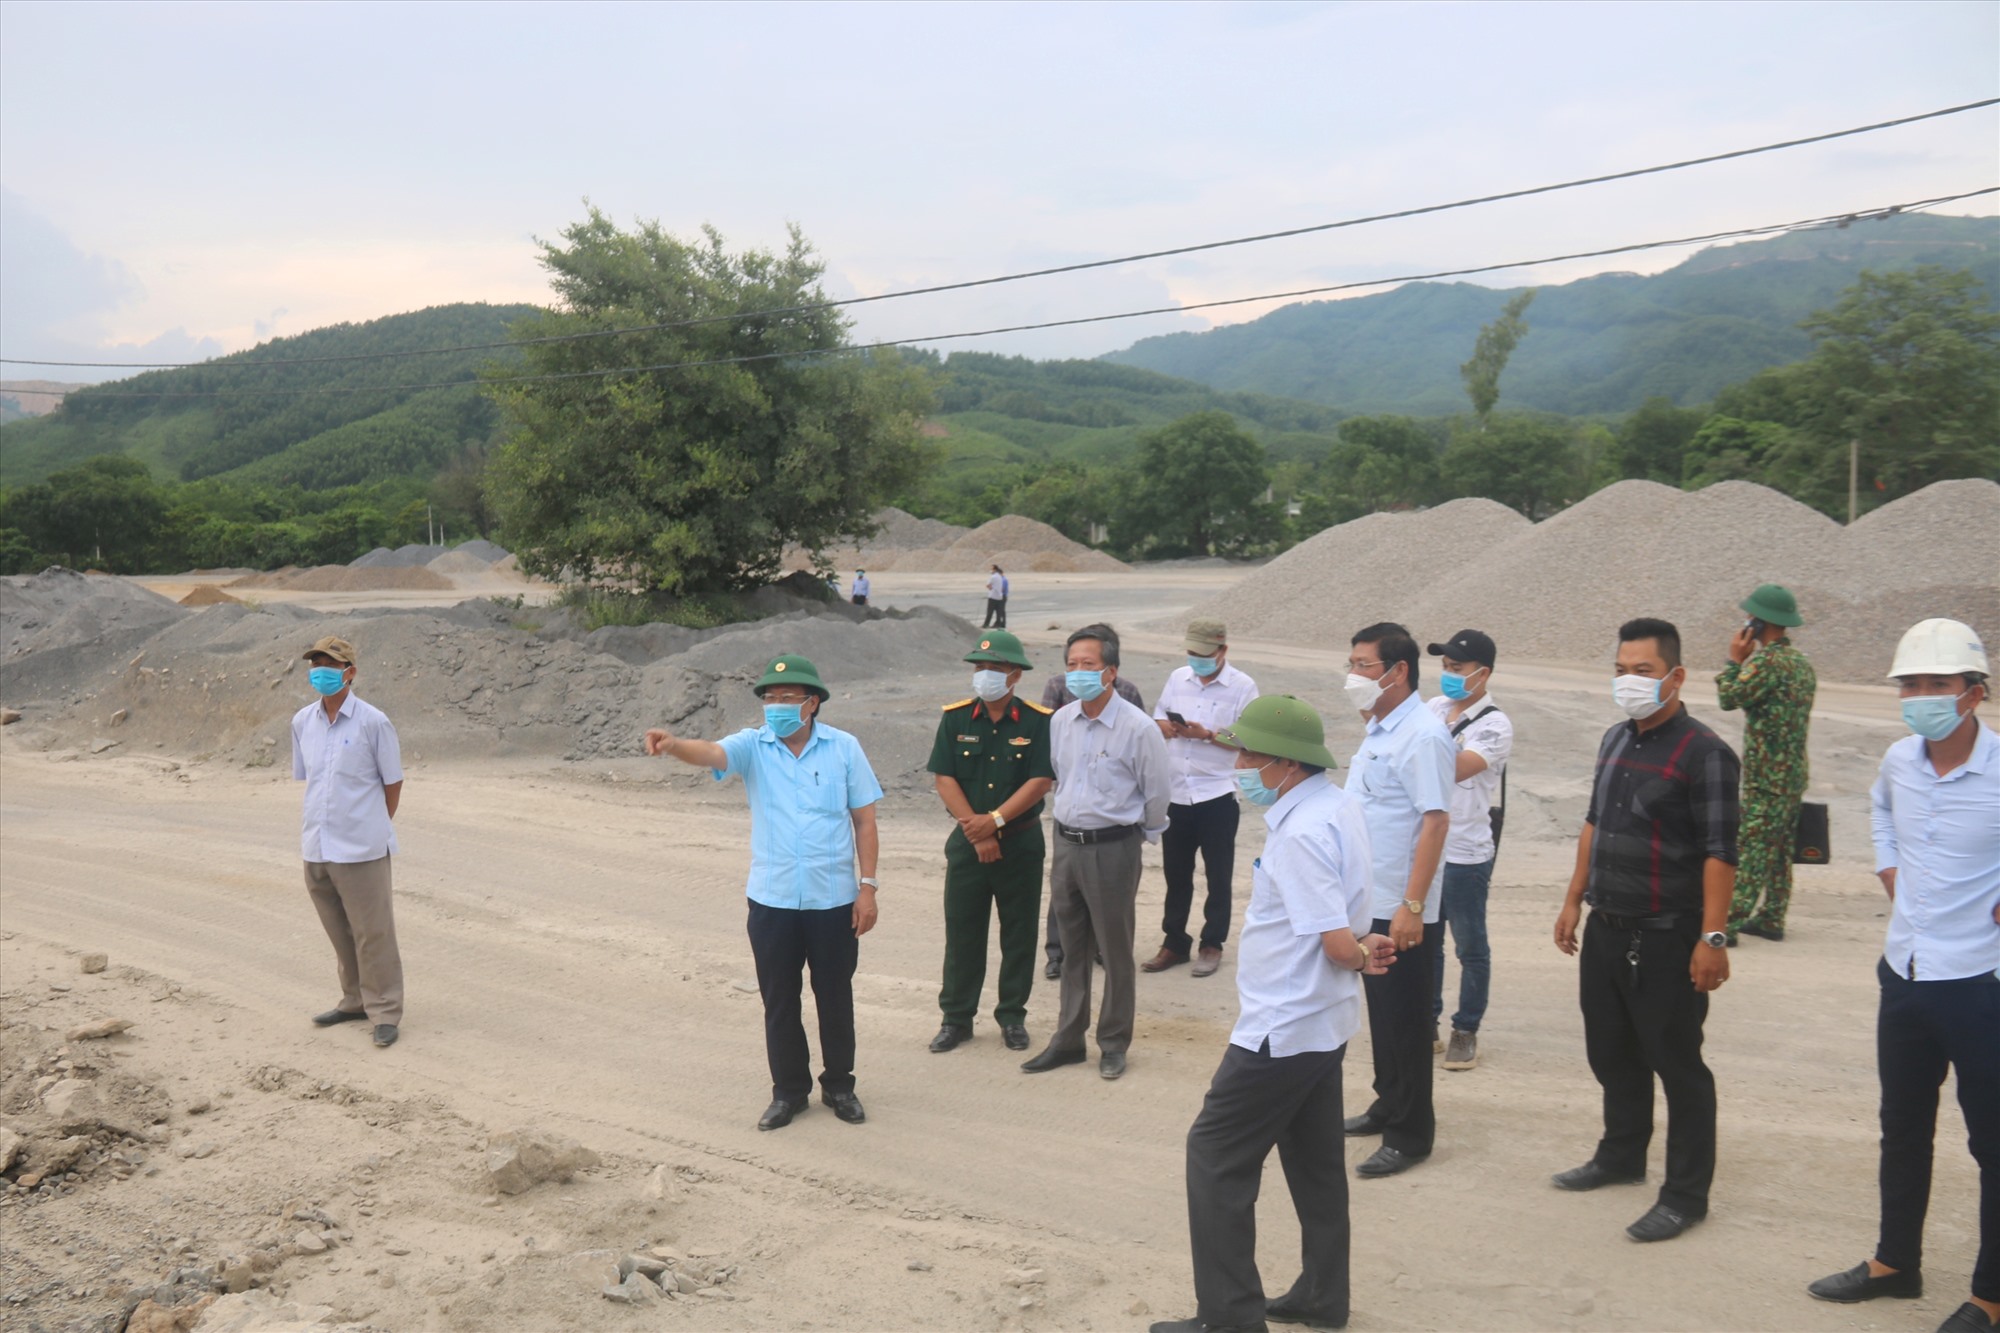 Phó Chủ tịch Thường trực UBND tỉnh Hà Sỹ Đồng kiểm tra tình hình khai thác đá làm vật liệu xây dựng thông thường của các doanh nghiệp tại khu vực Tân Lâm, huyện Cam Lộ - Ảnh: N.B